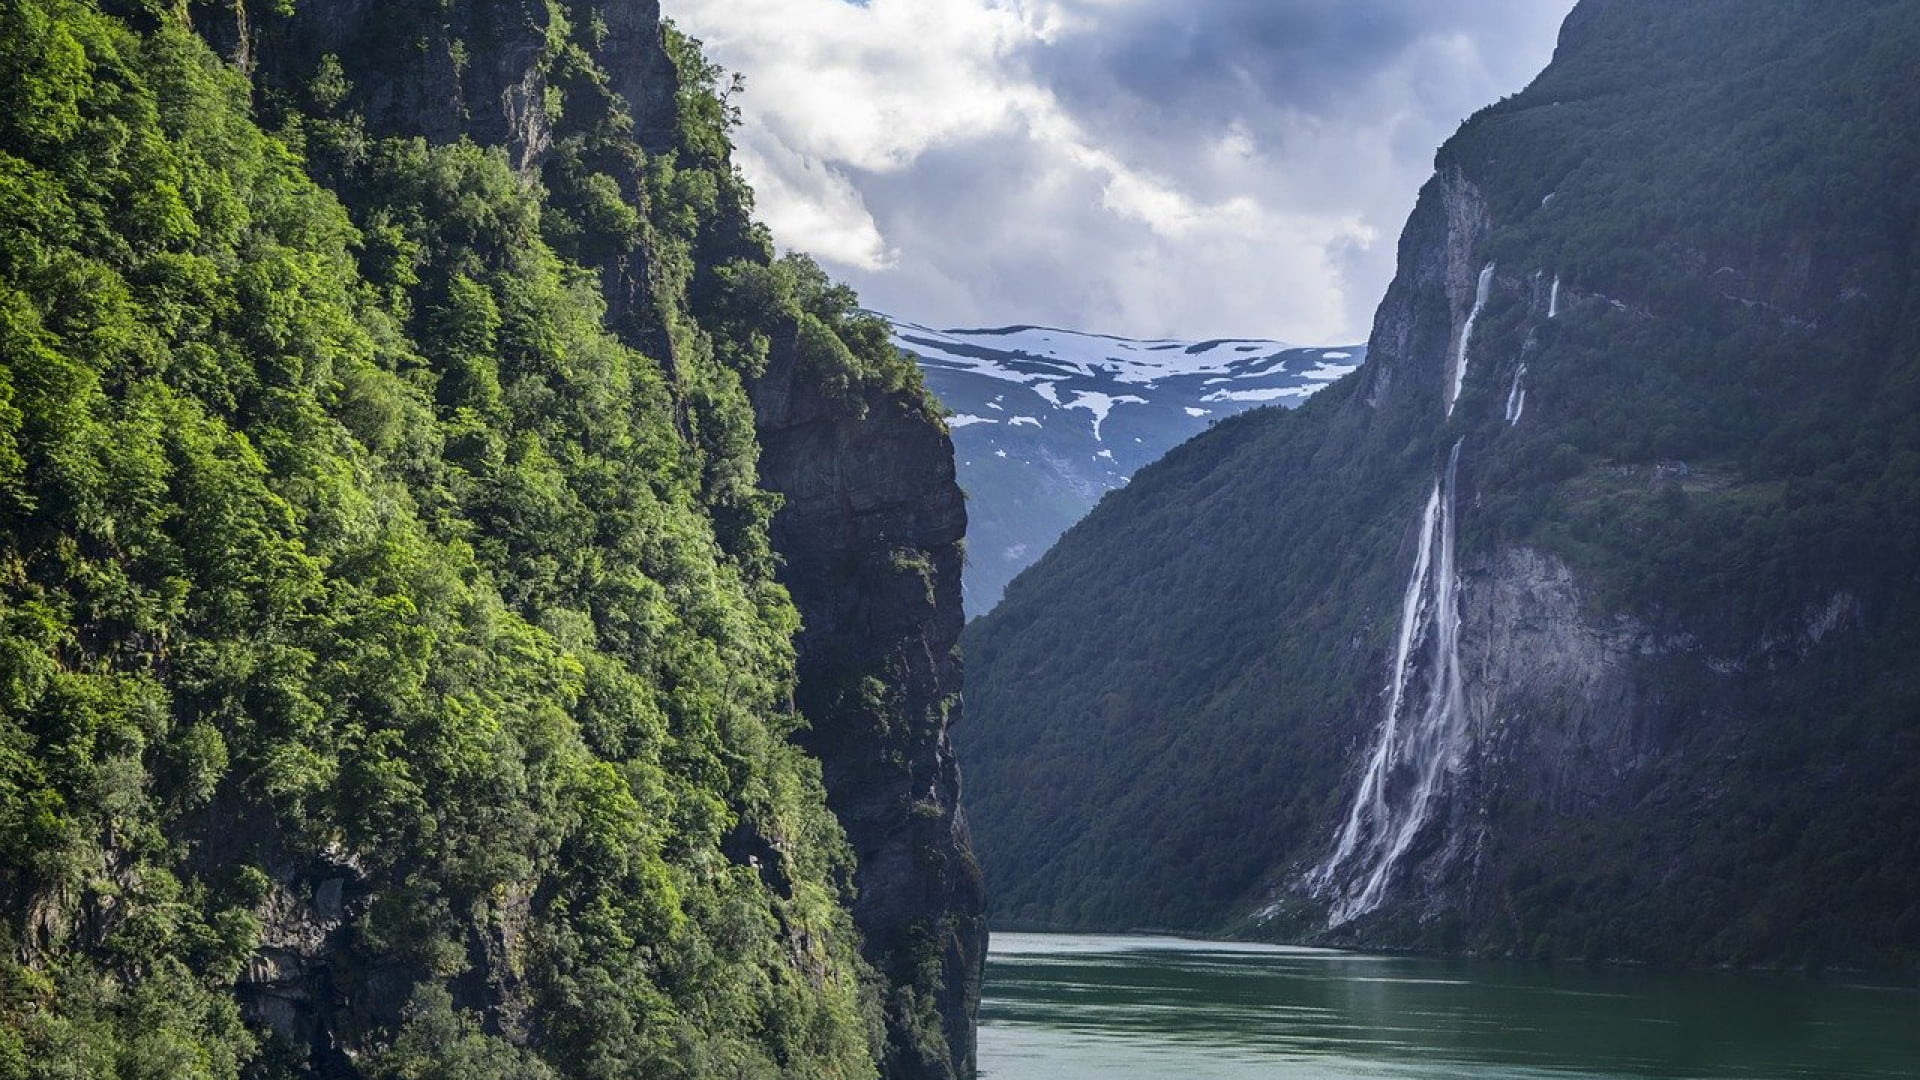 Vacances en Norvège : ces numéros de service client qui vous sauveront la mise !